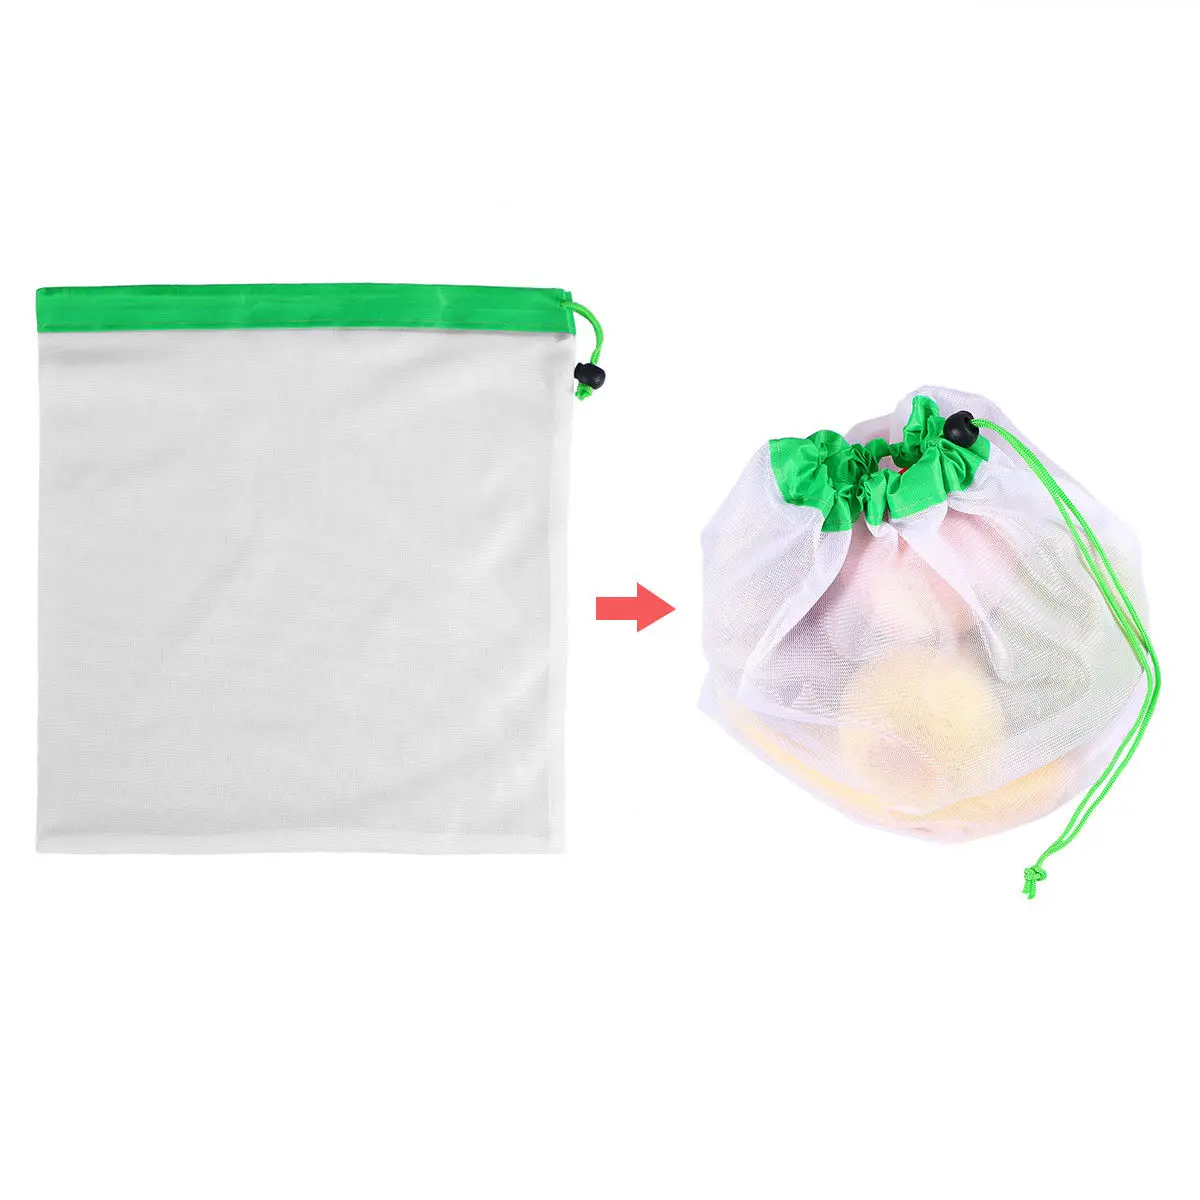 3 размера многоразовые сетчатые сумки, моющиеся мешки для хранения продуктов, для хранения фруктов, овощей, игрушек, органайзер для хранения мелочей